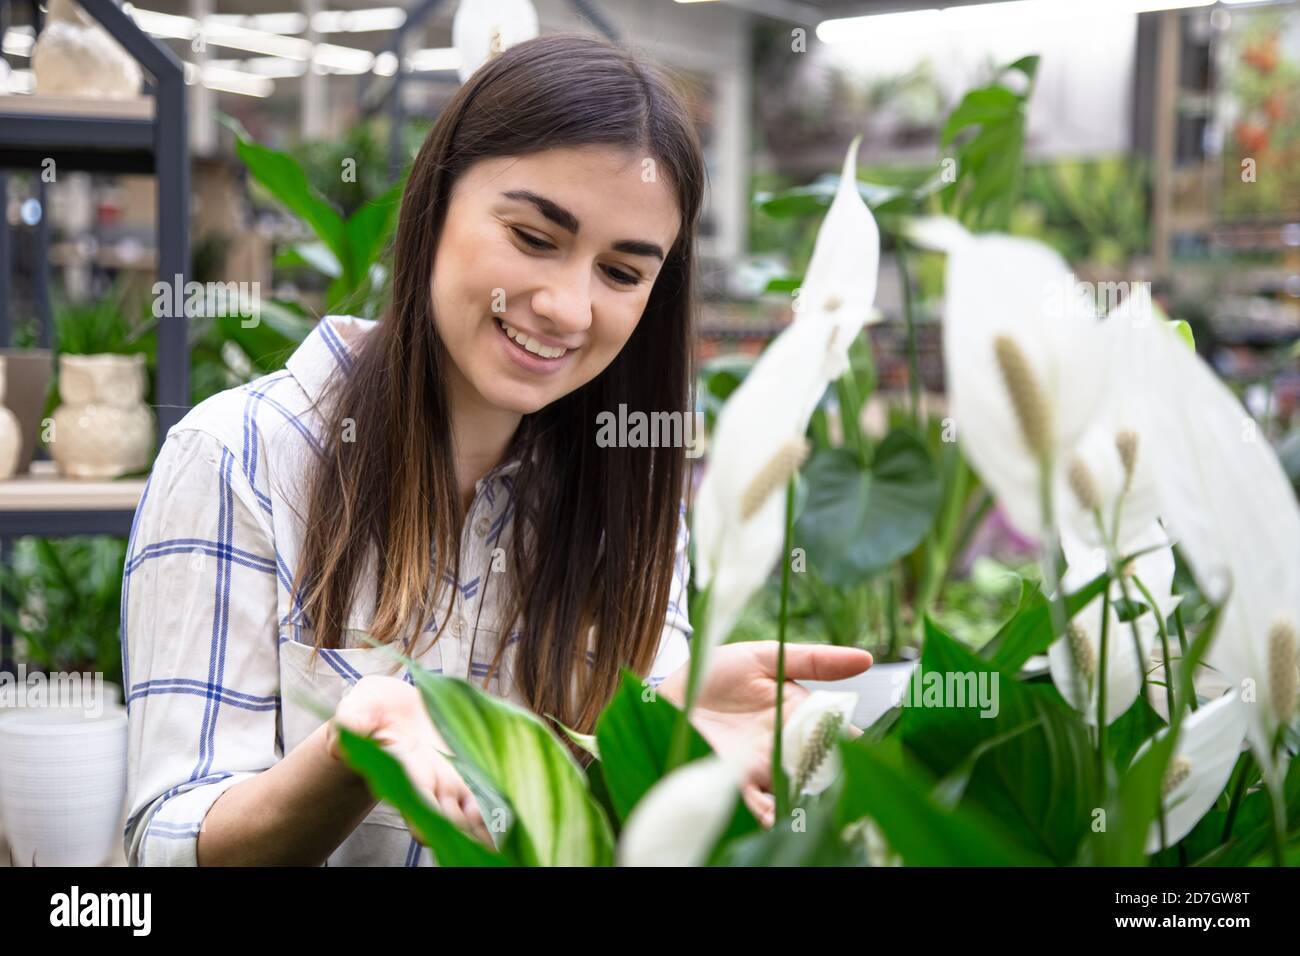 Eine junge schöne Frau wählt Blumen in einem Blumenladen. Nahaufnahme. Stockfoto